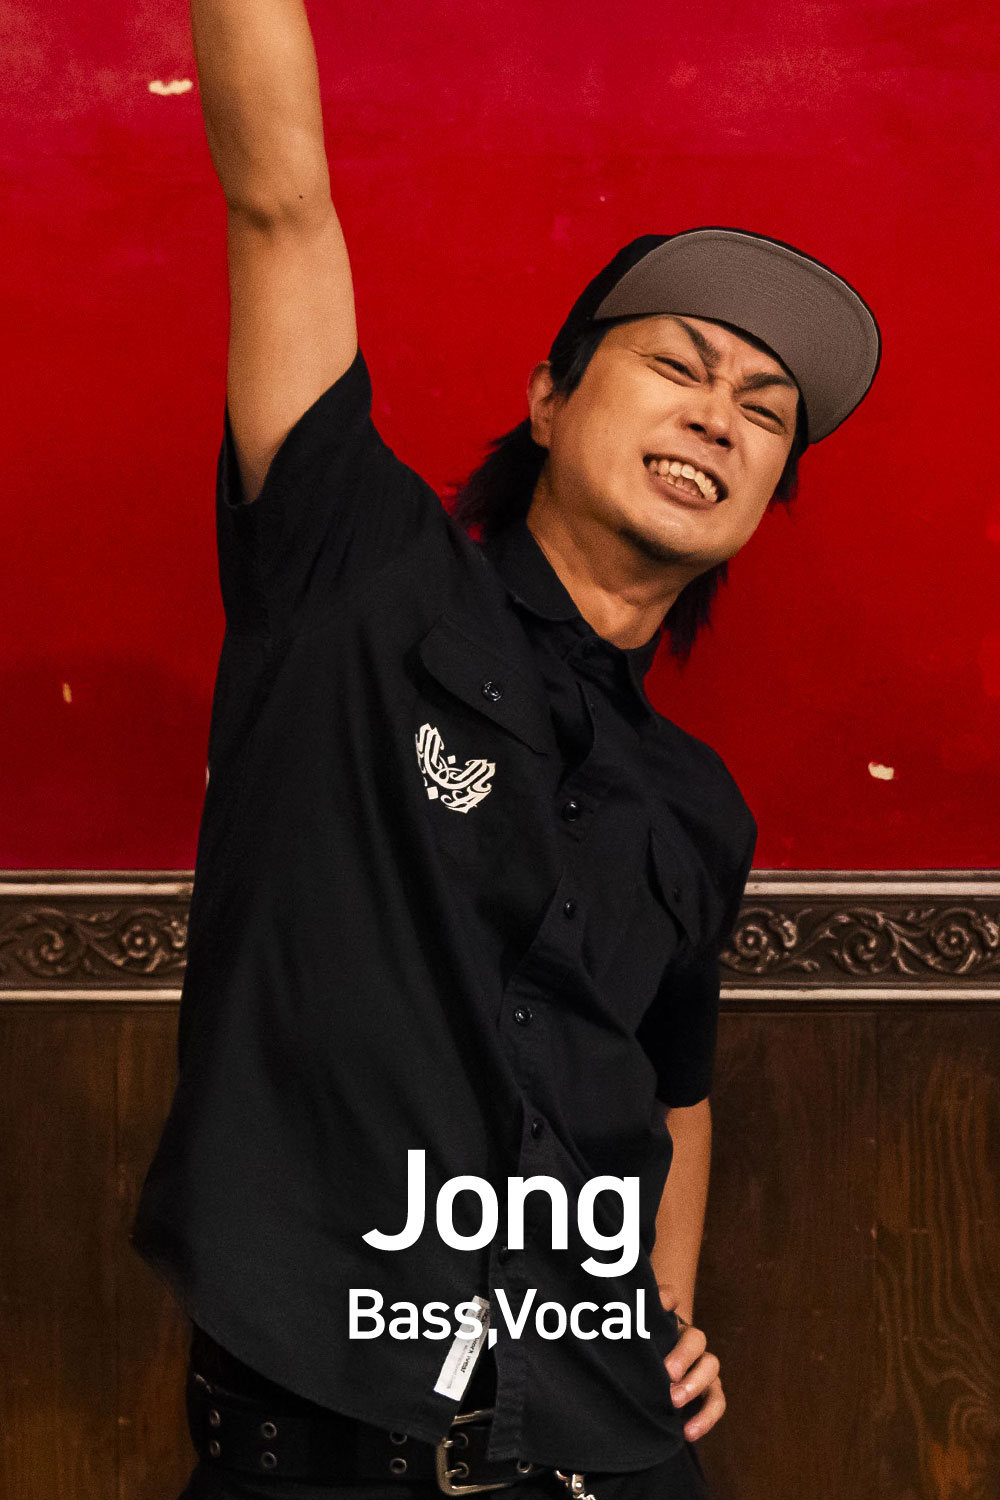 Jong Bass,Vocal